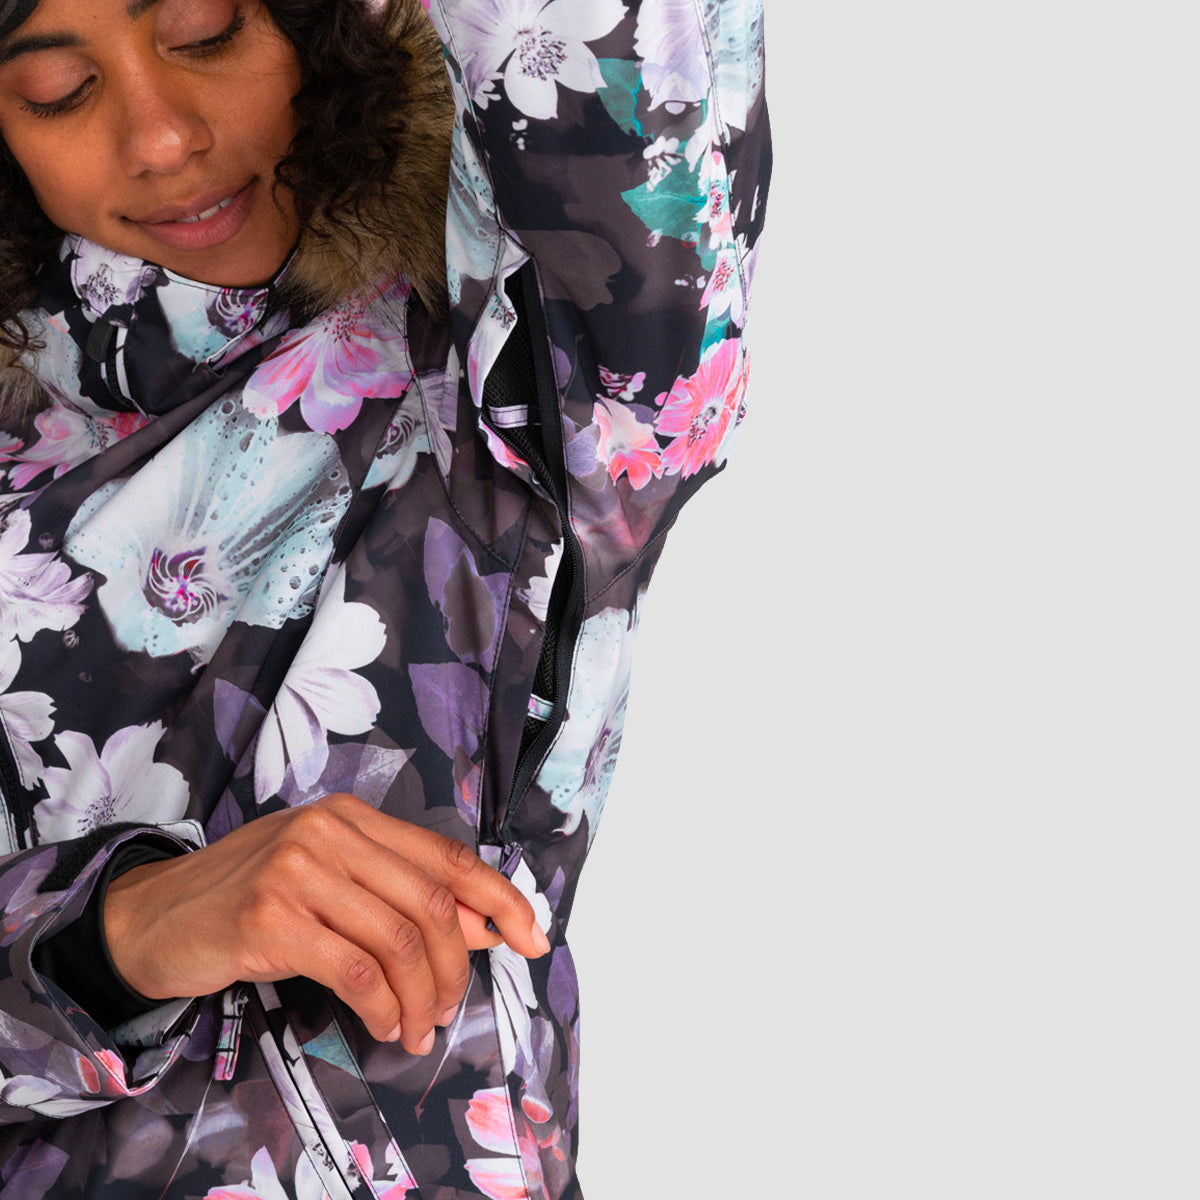 Roxy Jet Ski 10K Snow Jacket True Black Blurry Flower - Womens